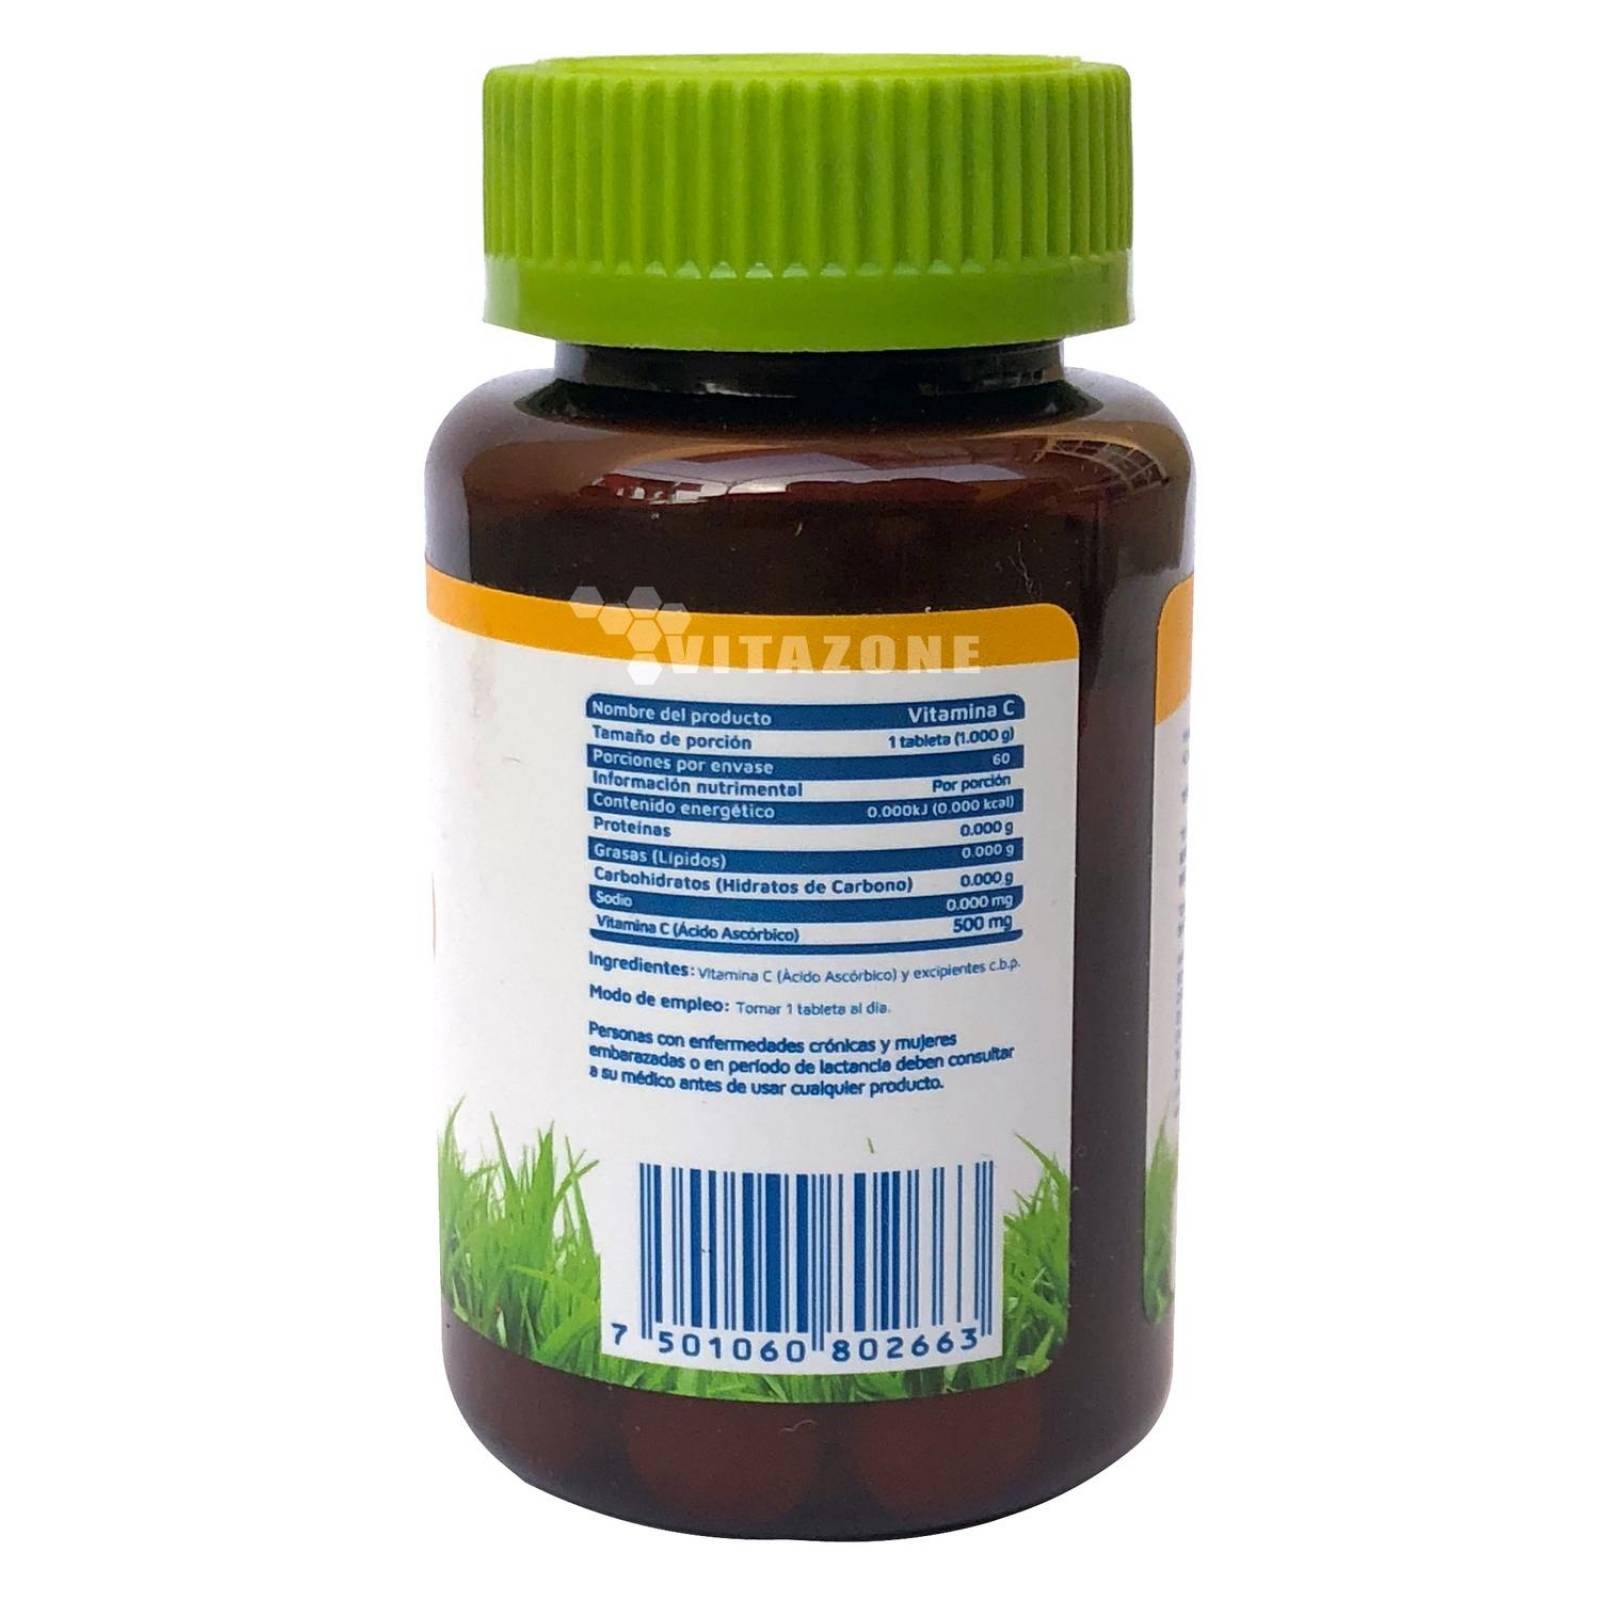 Vitamina C 60 Tabletas 500 Mg Vidanat. (3 FRASCOS) 